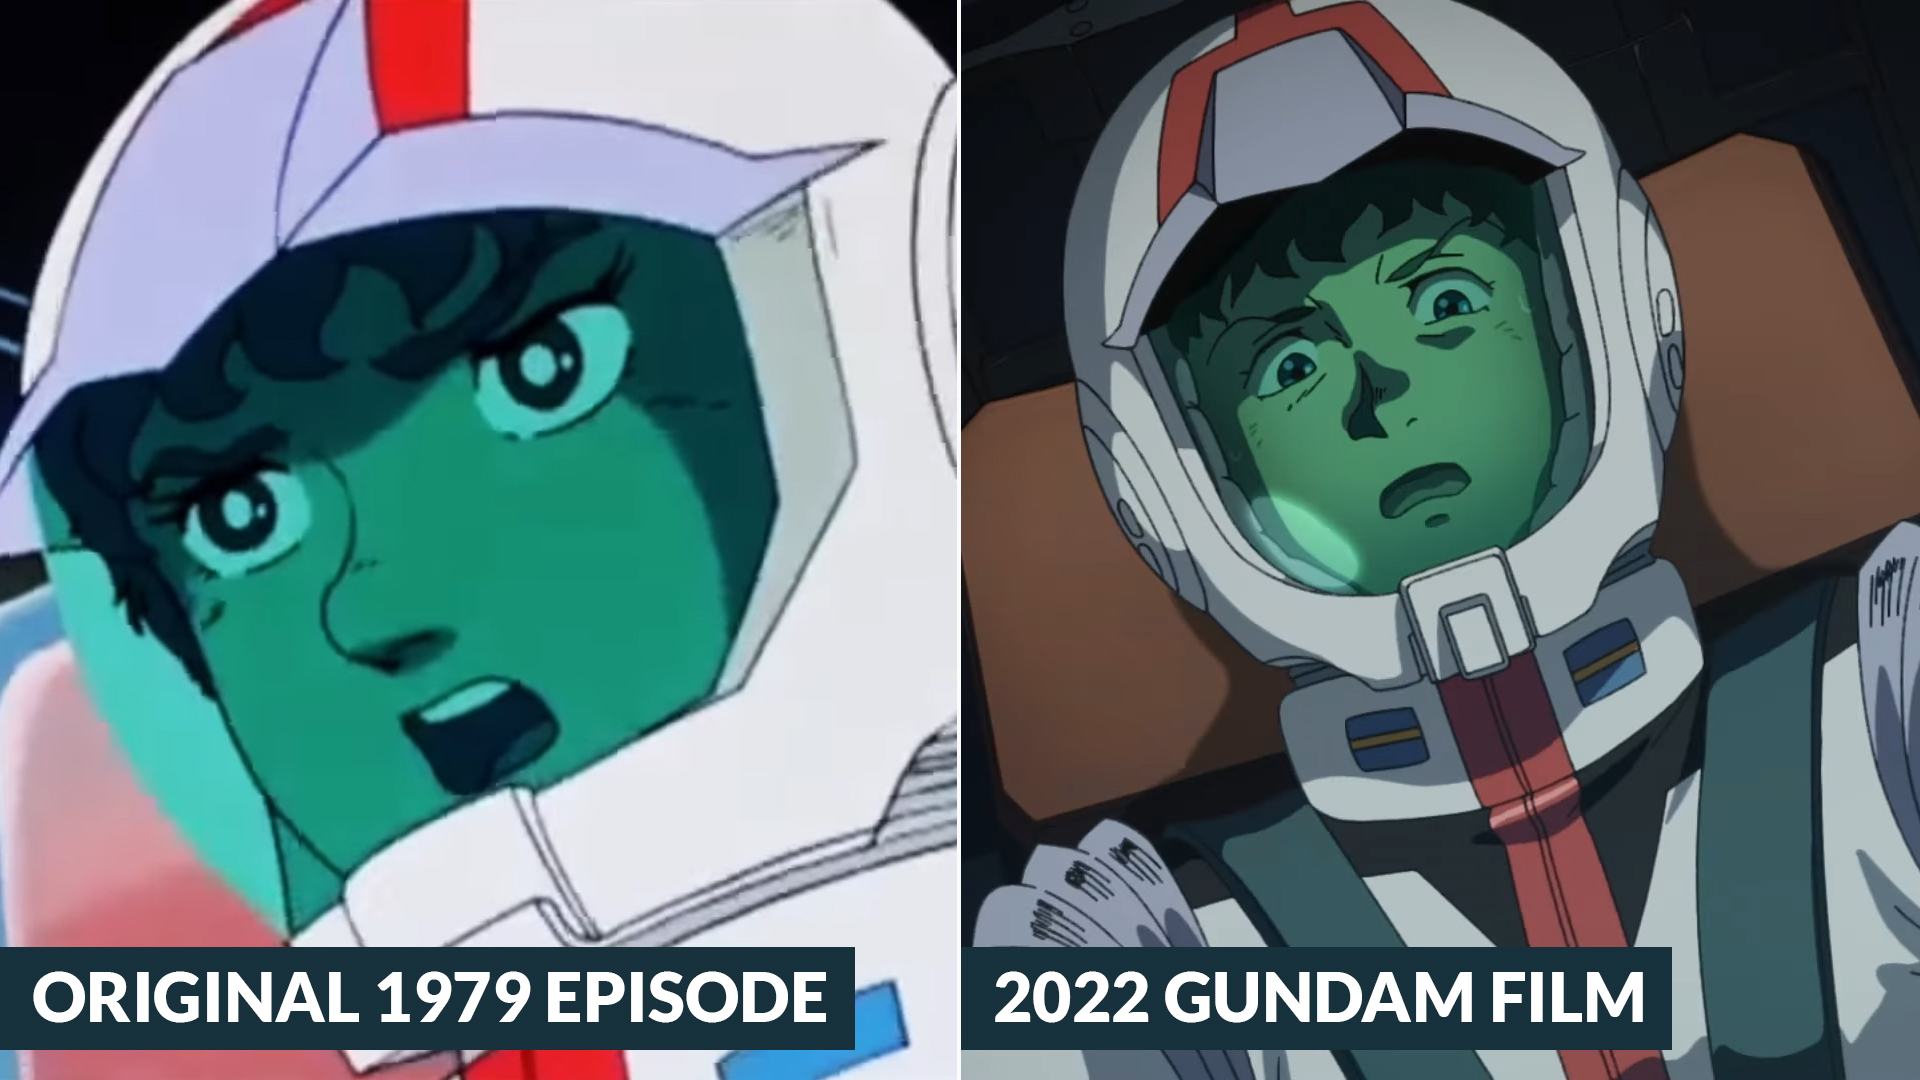 Mobile Suit Gundam Cucuruz Doan's Island - Comparison